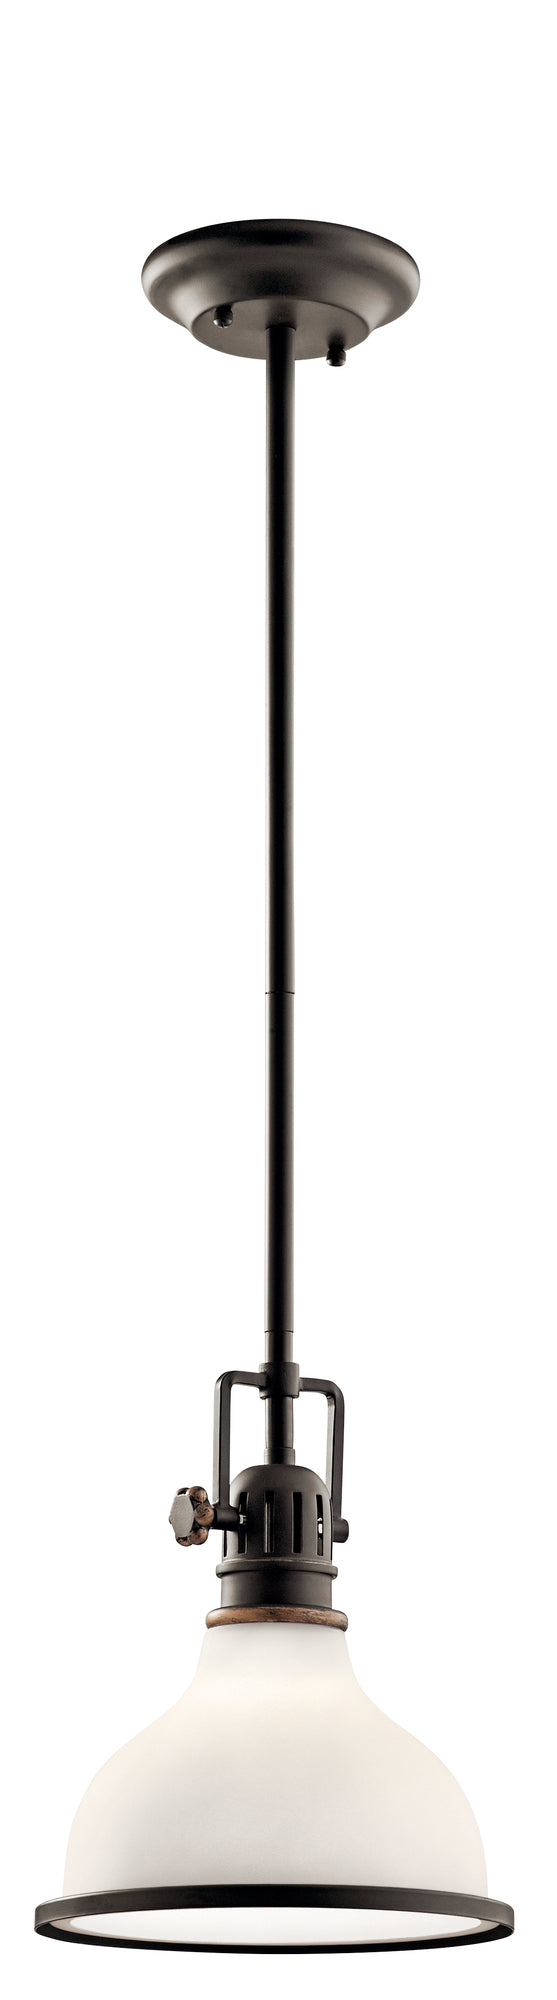 HATTERAS BAY Suspension simple Bronze - 43764OZ | KICHLER